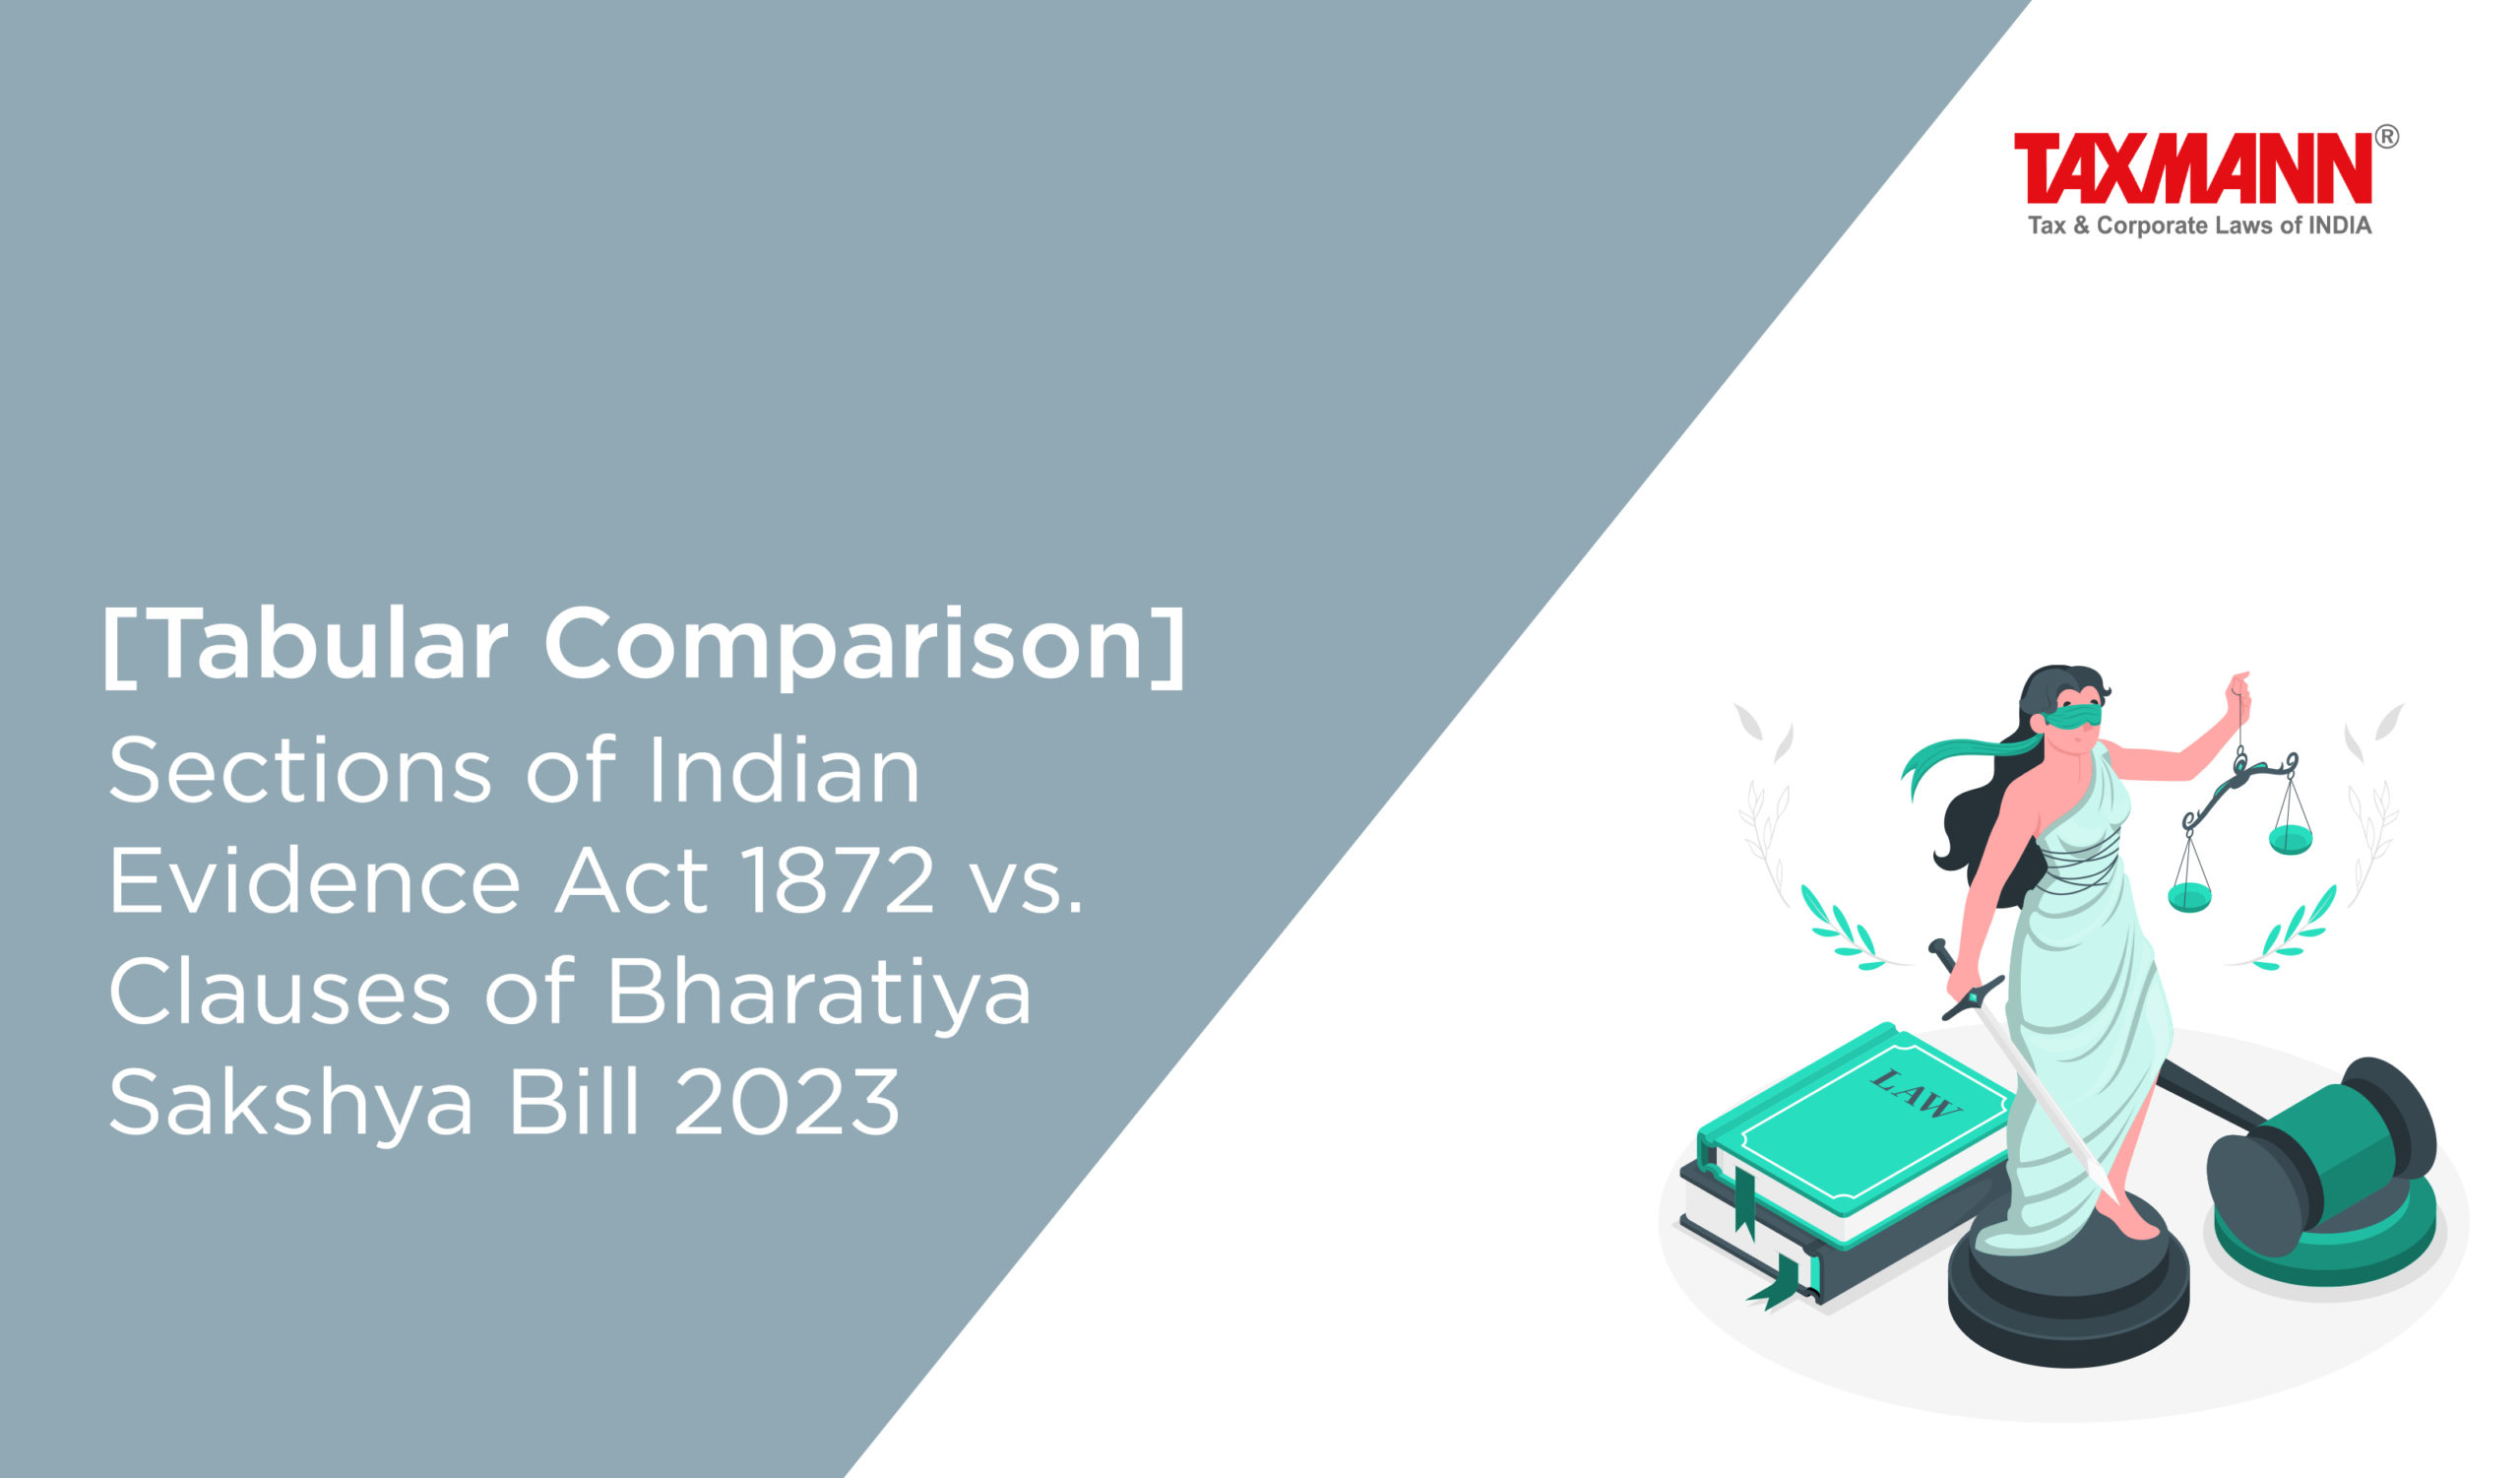 Bharatiya Sakshya Bill 2023